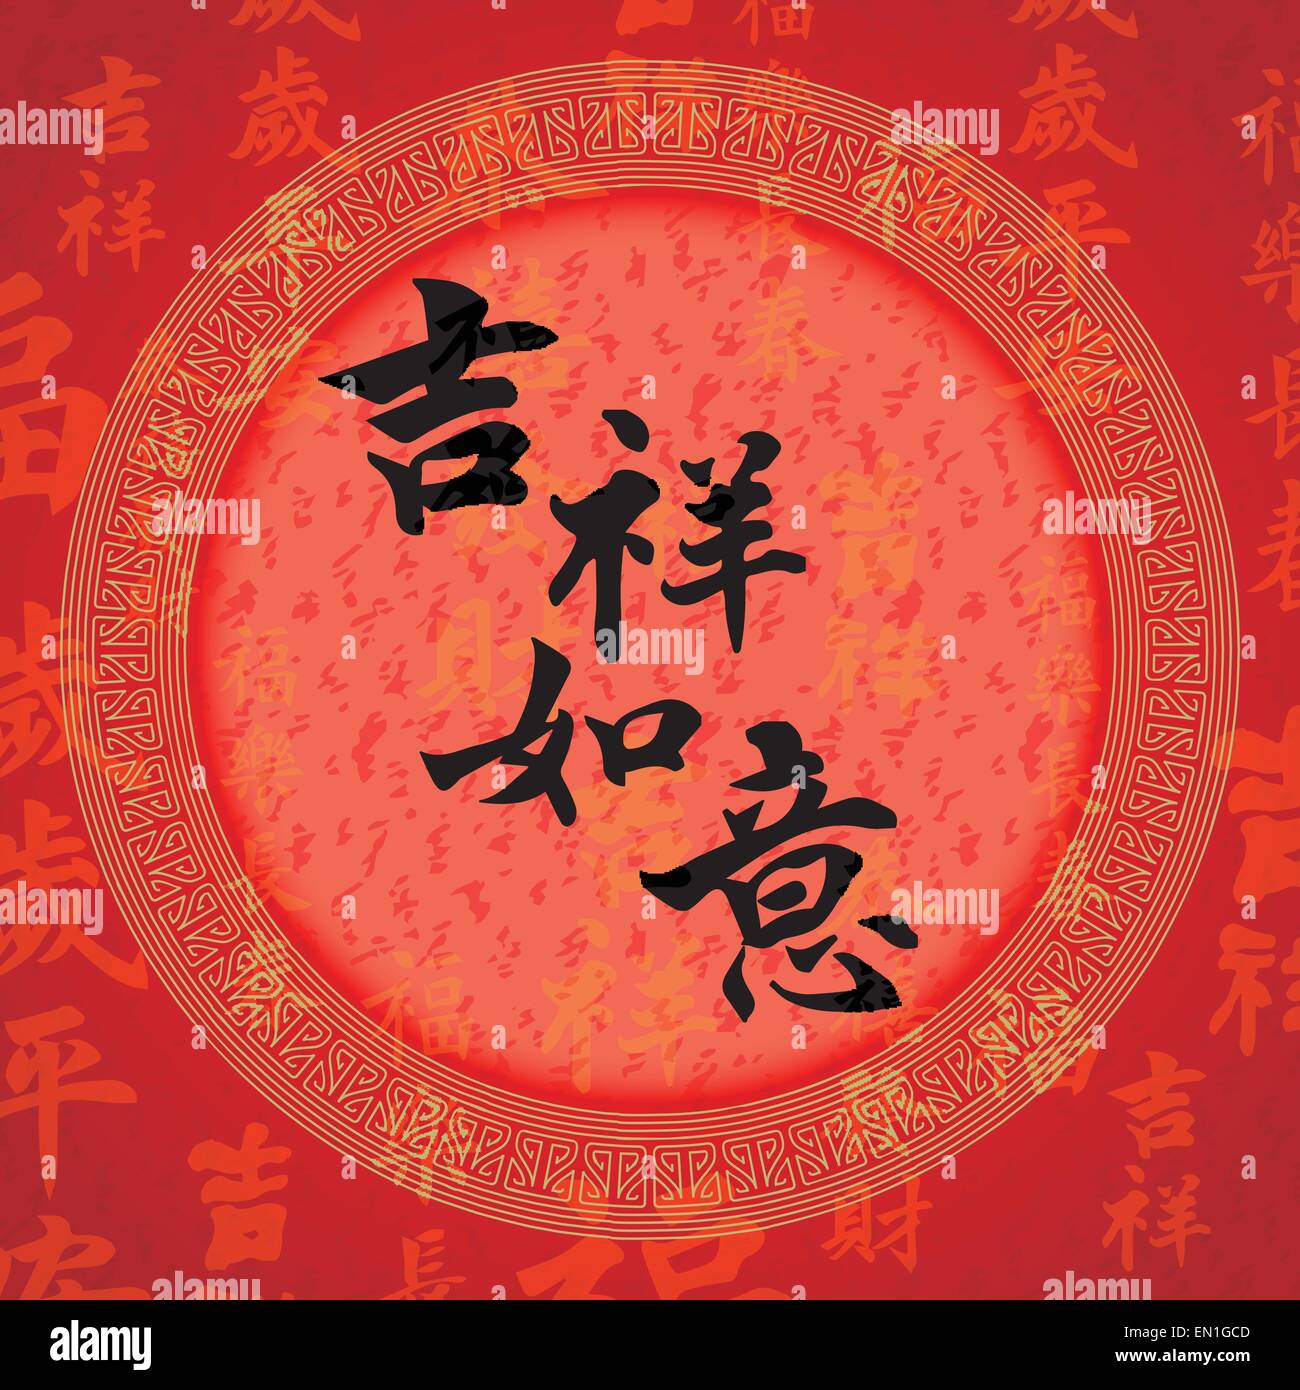 Kalligraphie-chinesische Schriftzeichen für "glücklich und Sicherheit  Silvester Stock-Vektorgrafik - Alamy